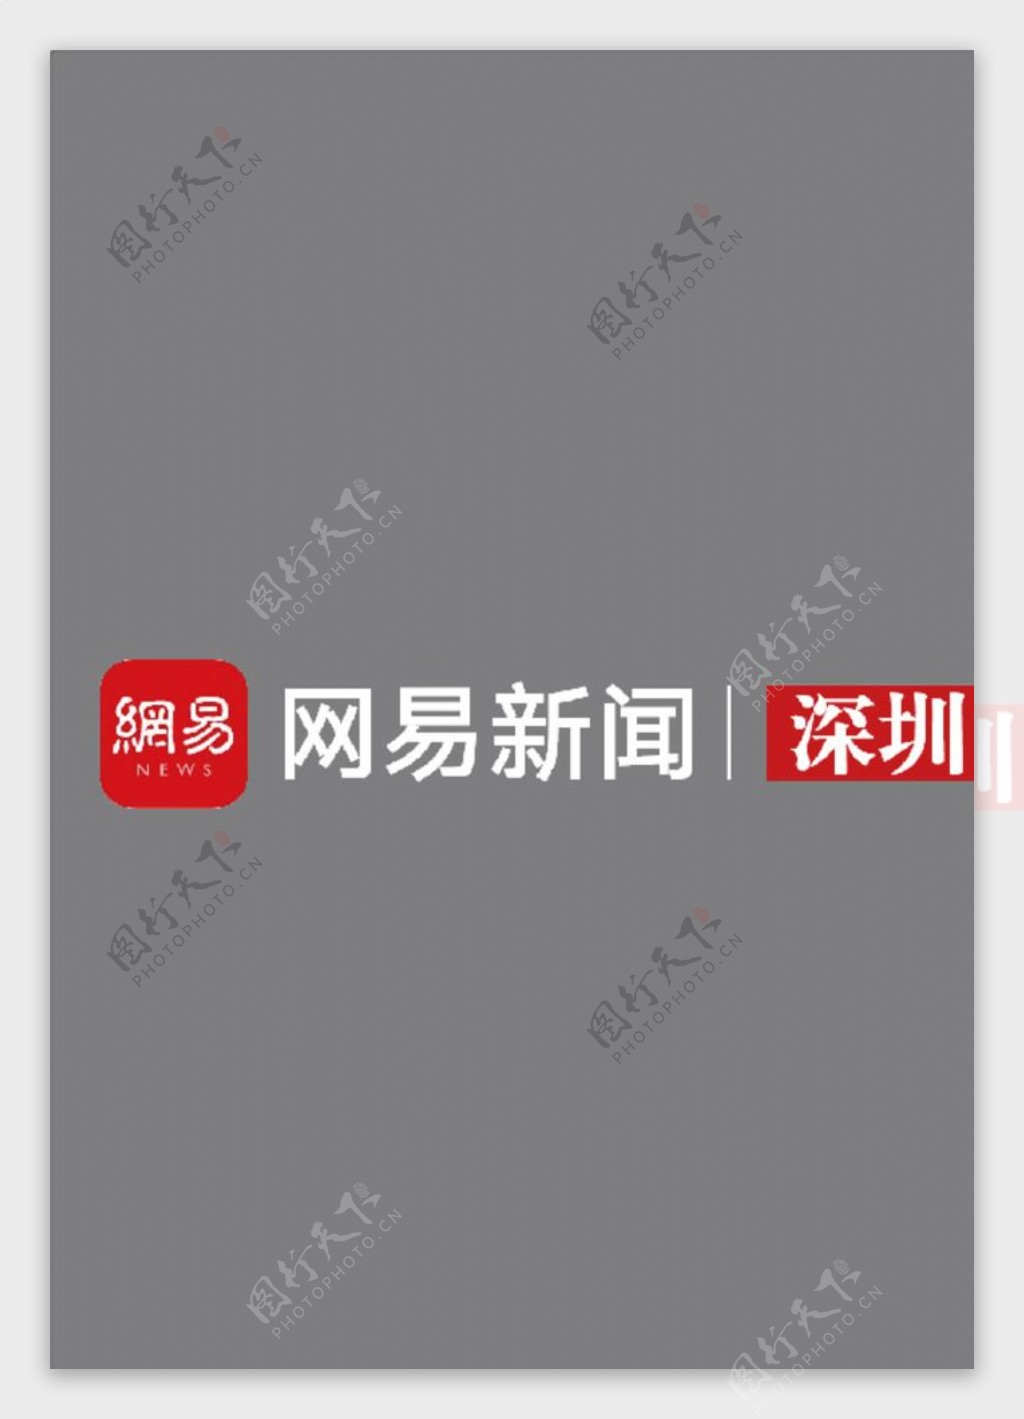 网易新闻深圳矢量logo